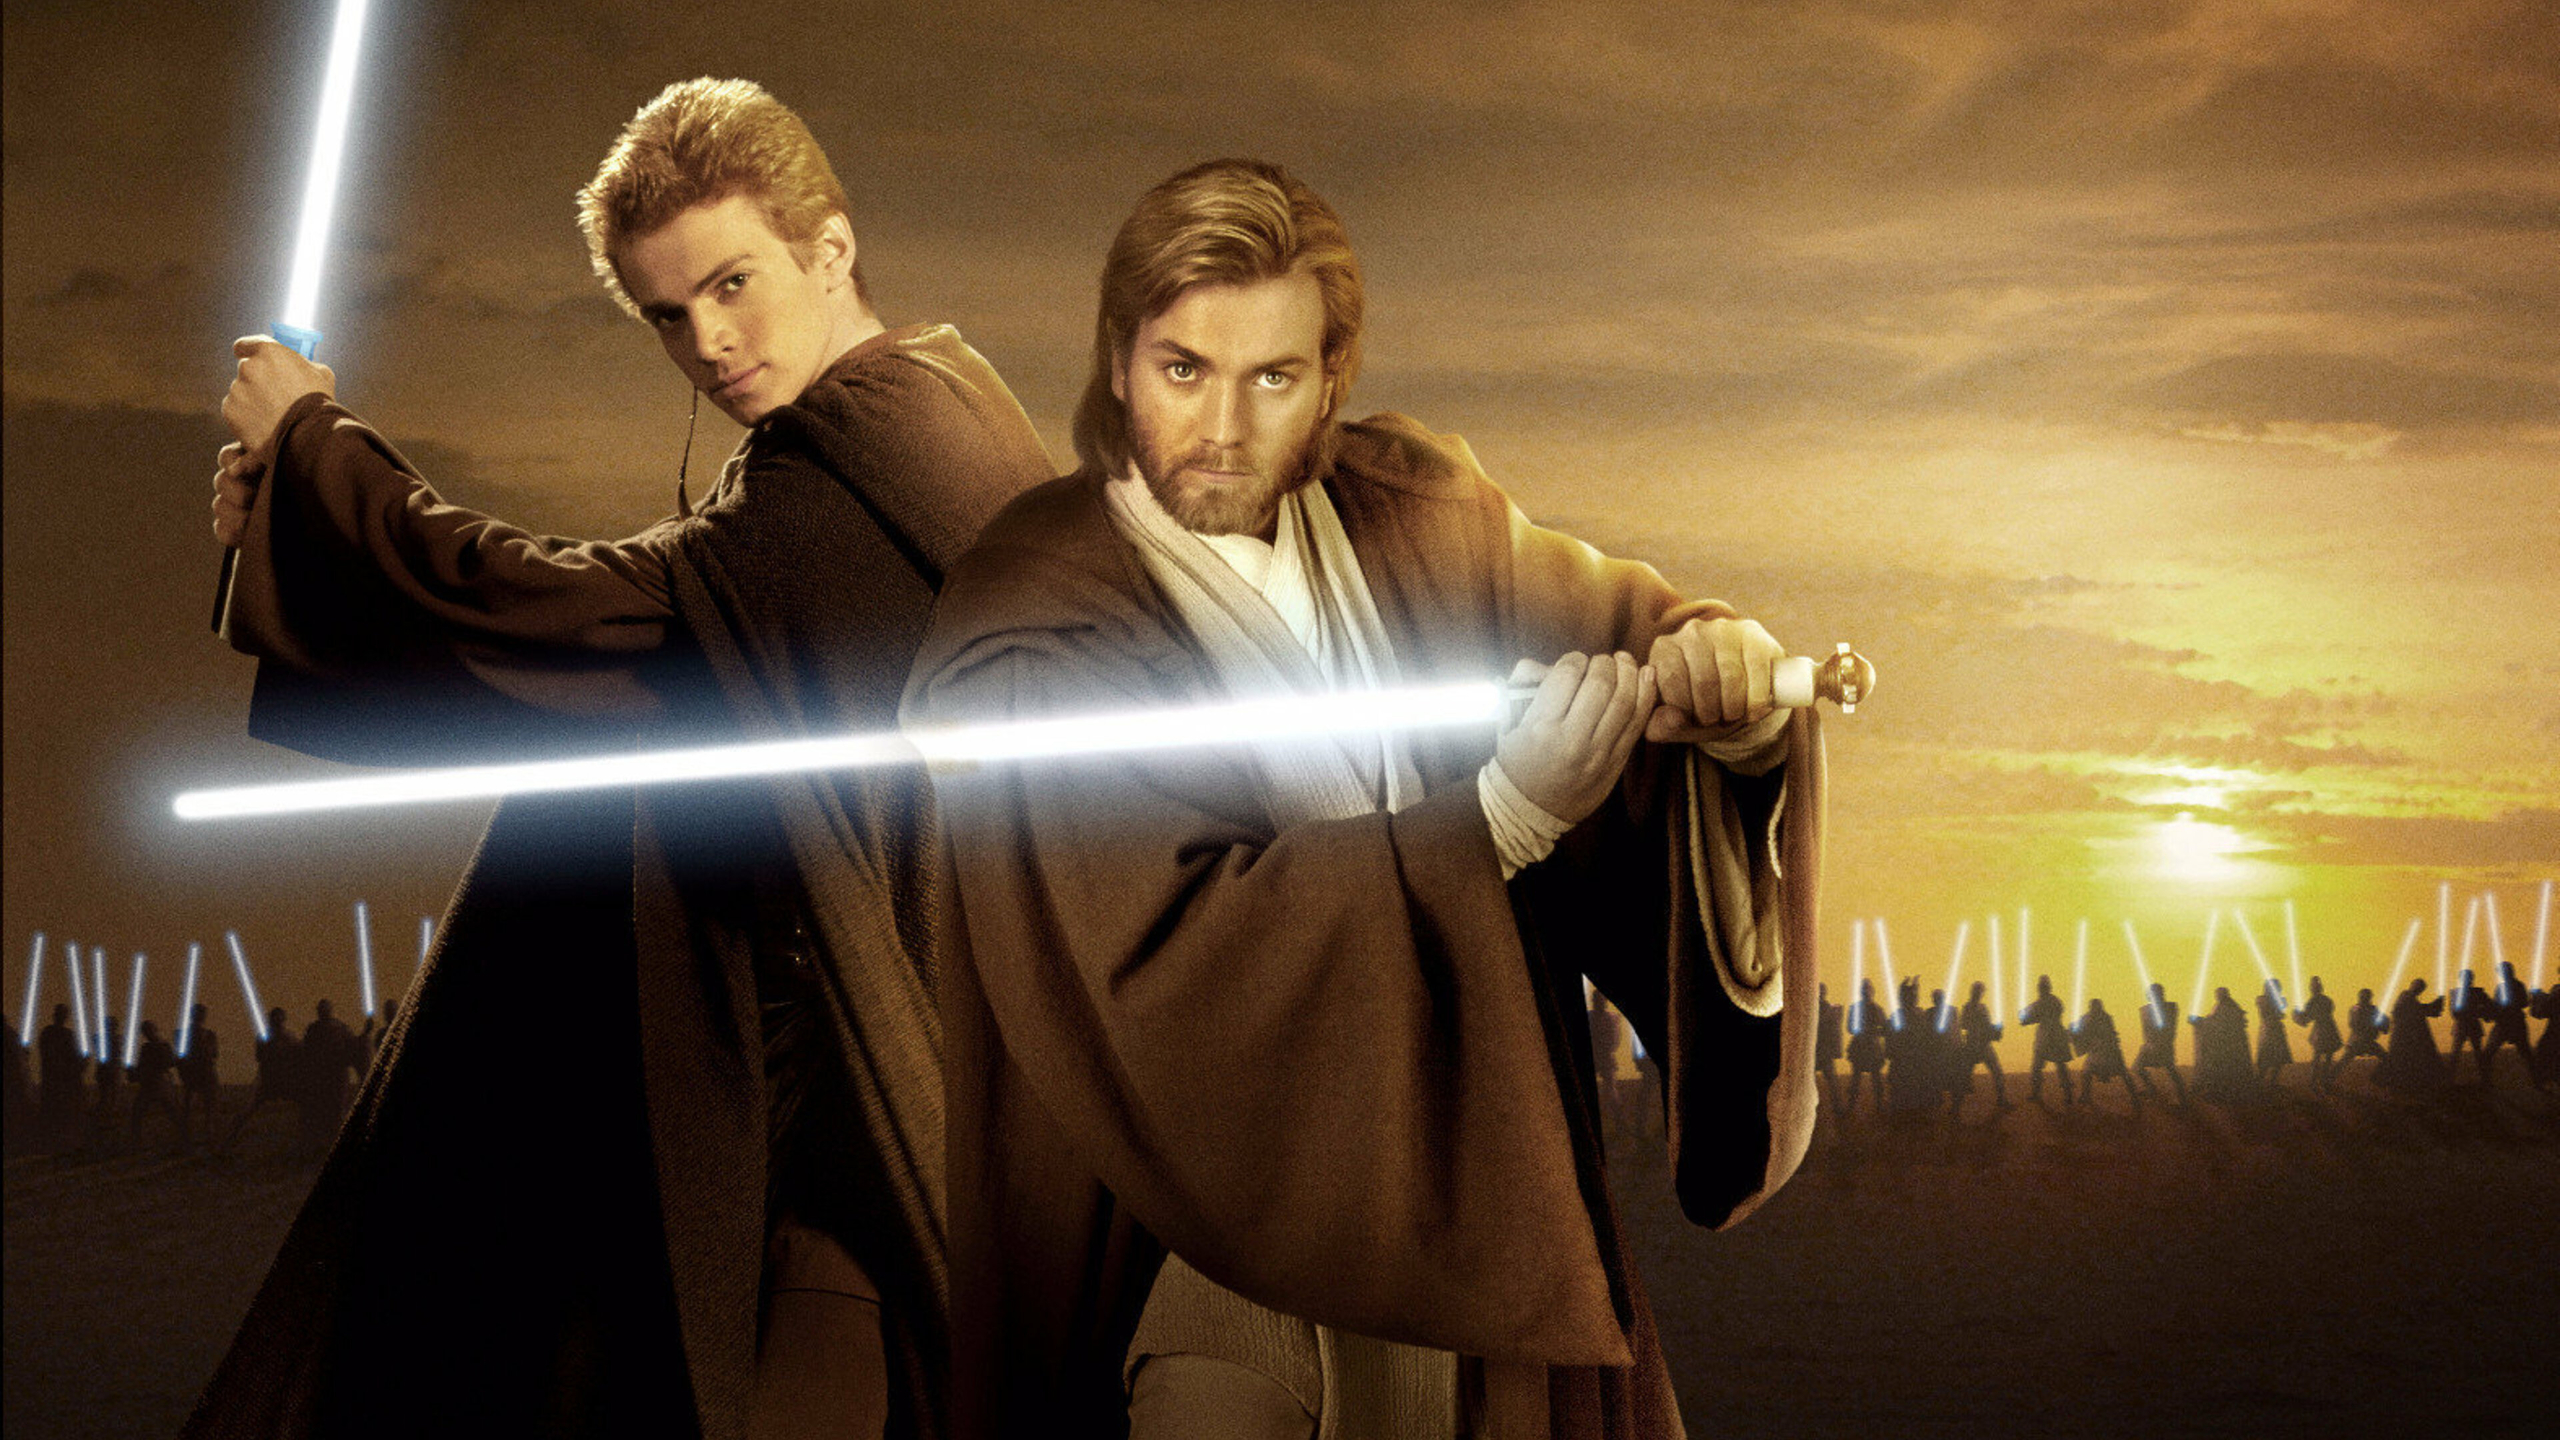  Anakin Skywalker HQ Background Images